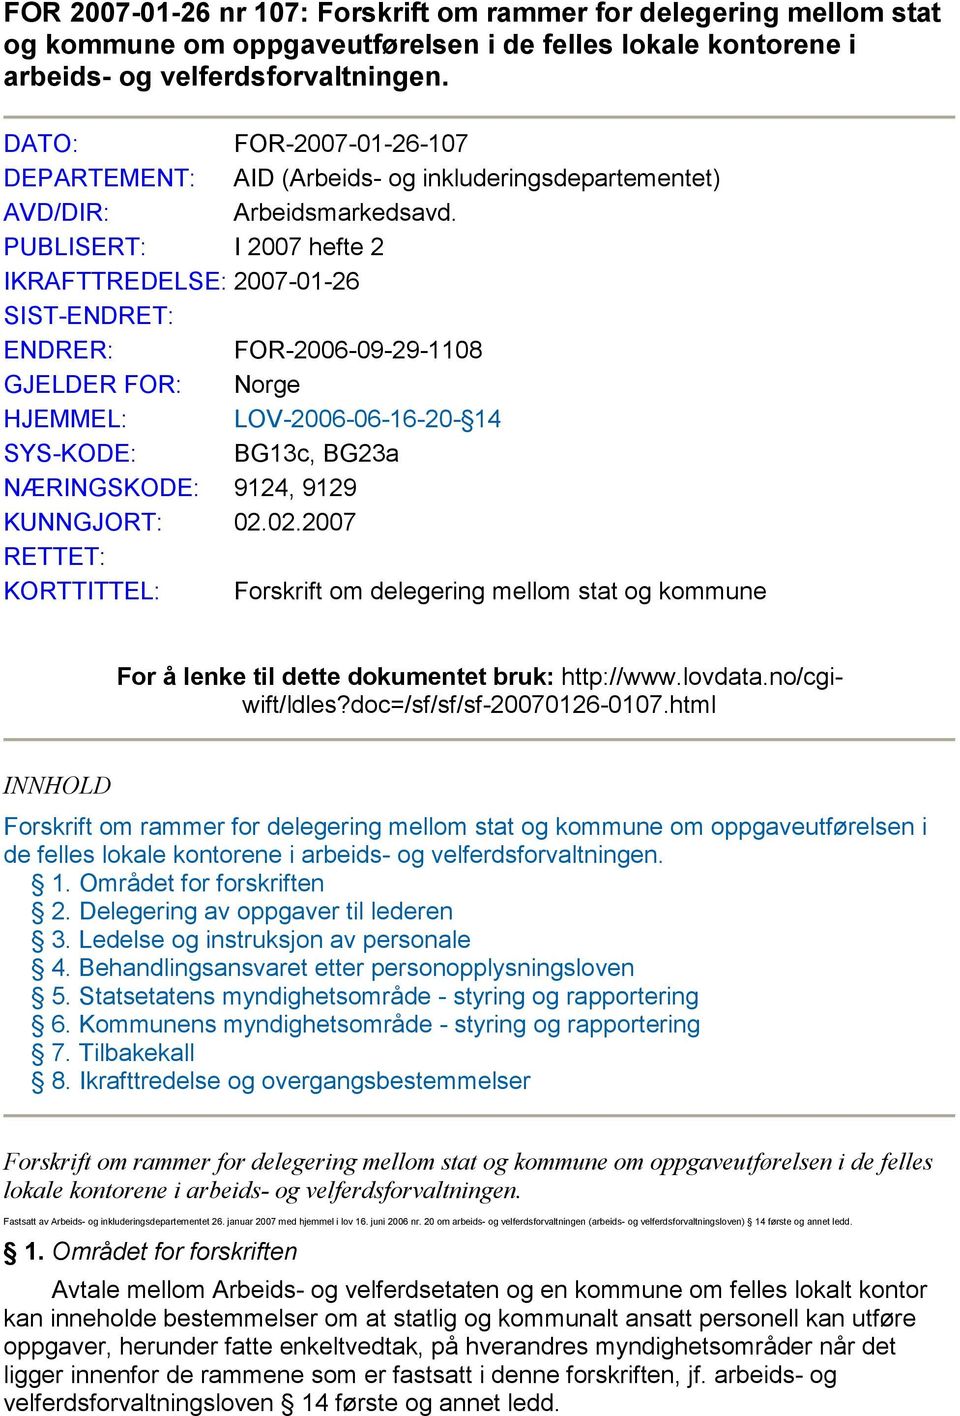 PUBLISERT: I 2007 hefte 2 IKRAFTTREDELSE: 2007-01-26 SIST-ENDRET: ENDRER: FOR-2006-09-29-1108 GJELDER FOR: Norge HJEMMEL: LOV-2006-06-16-20- 14 SYS-KODE: BG13c, BG23a NÆRINGSKODE: 9124, 9129